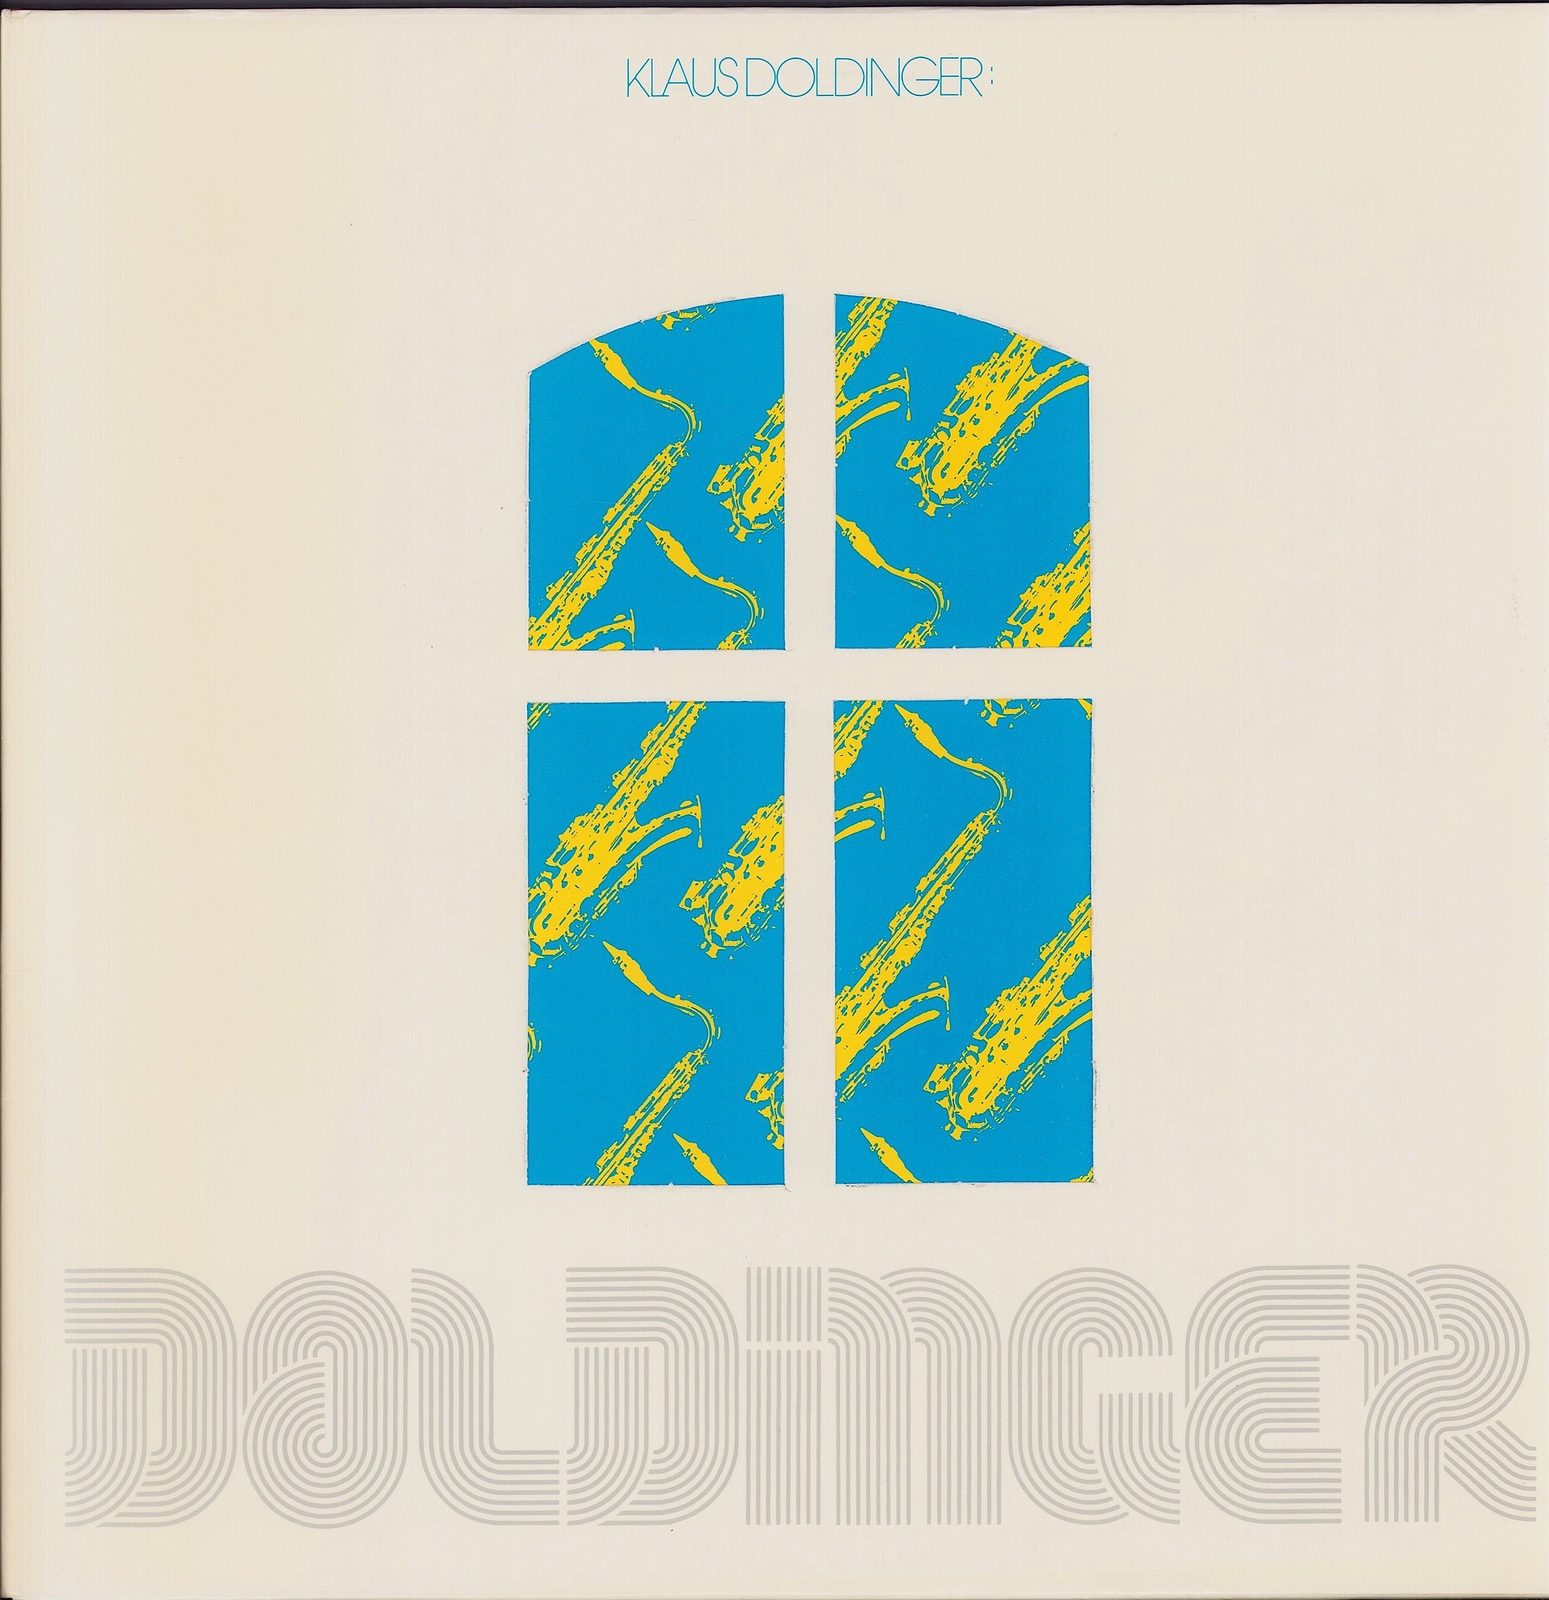 Klaus Doldinger ‎- Doldinger Vinyl 2LP DE